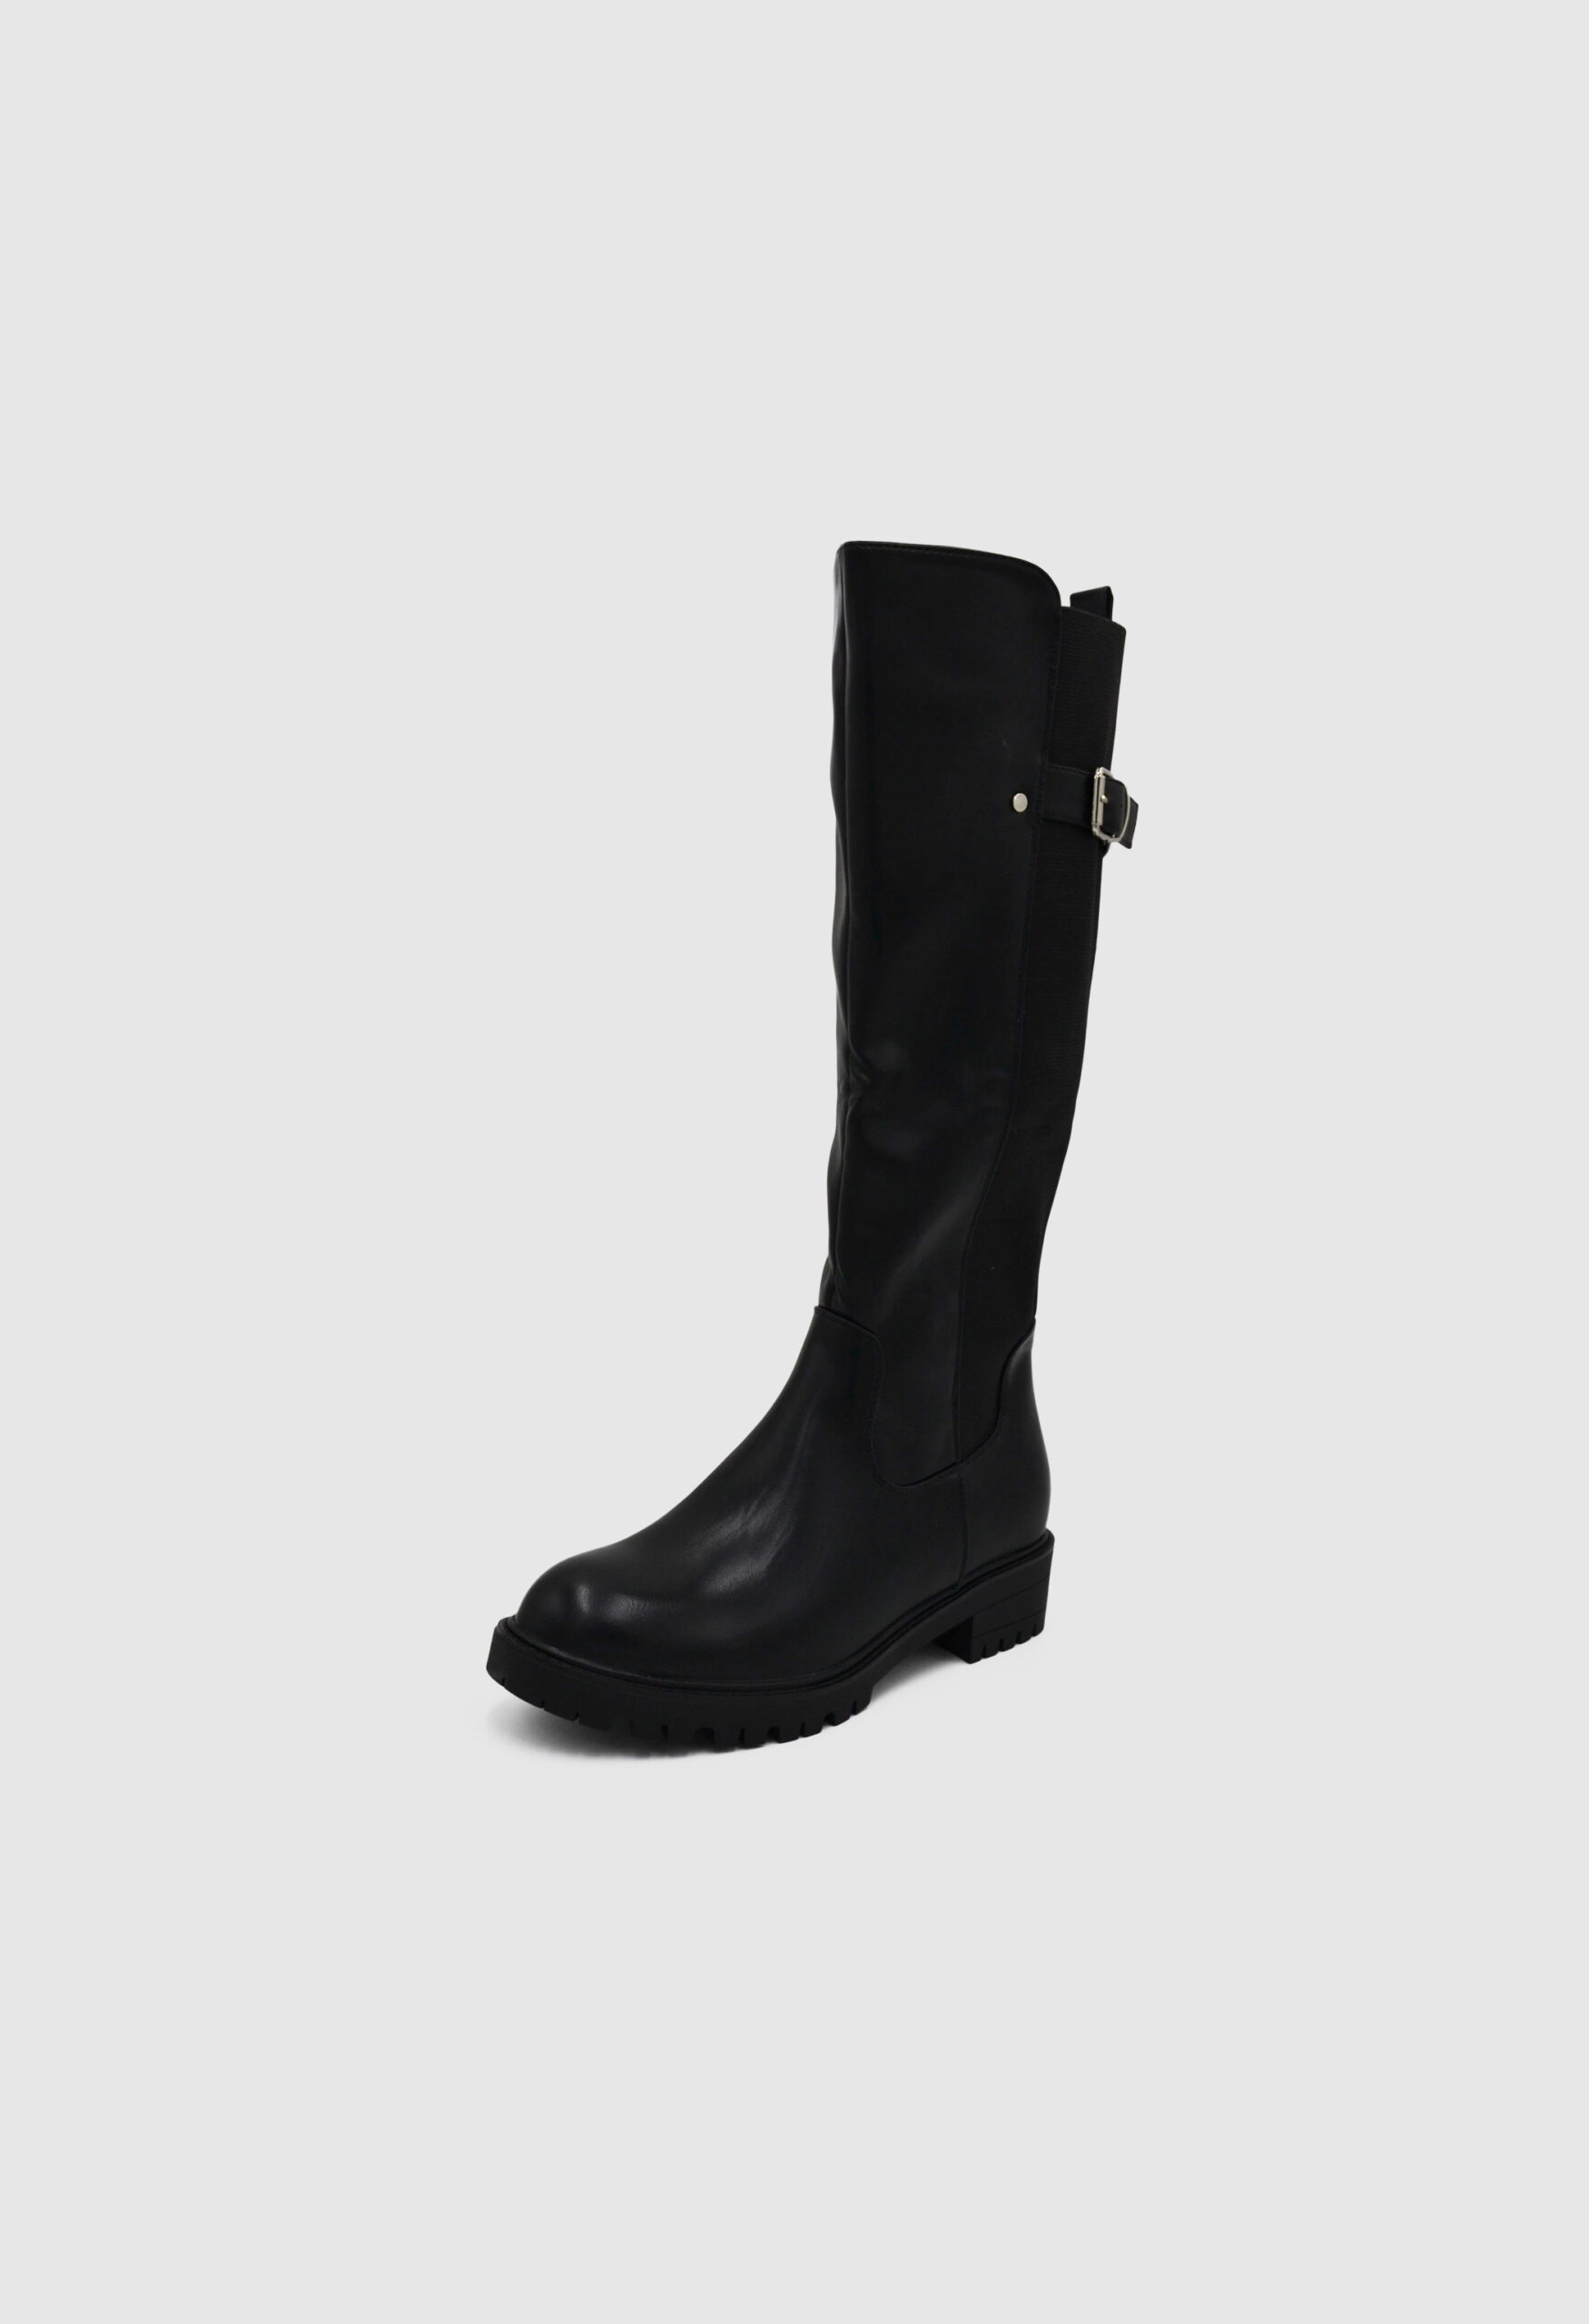 Μπότες Χιονιού με Λάστιχο και Διακοσμητική Τόκα / DM-Y27-black Γυναικεία Mπότες joya.gr